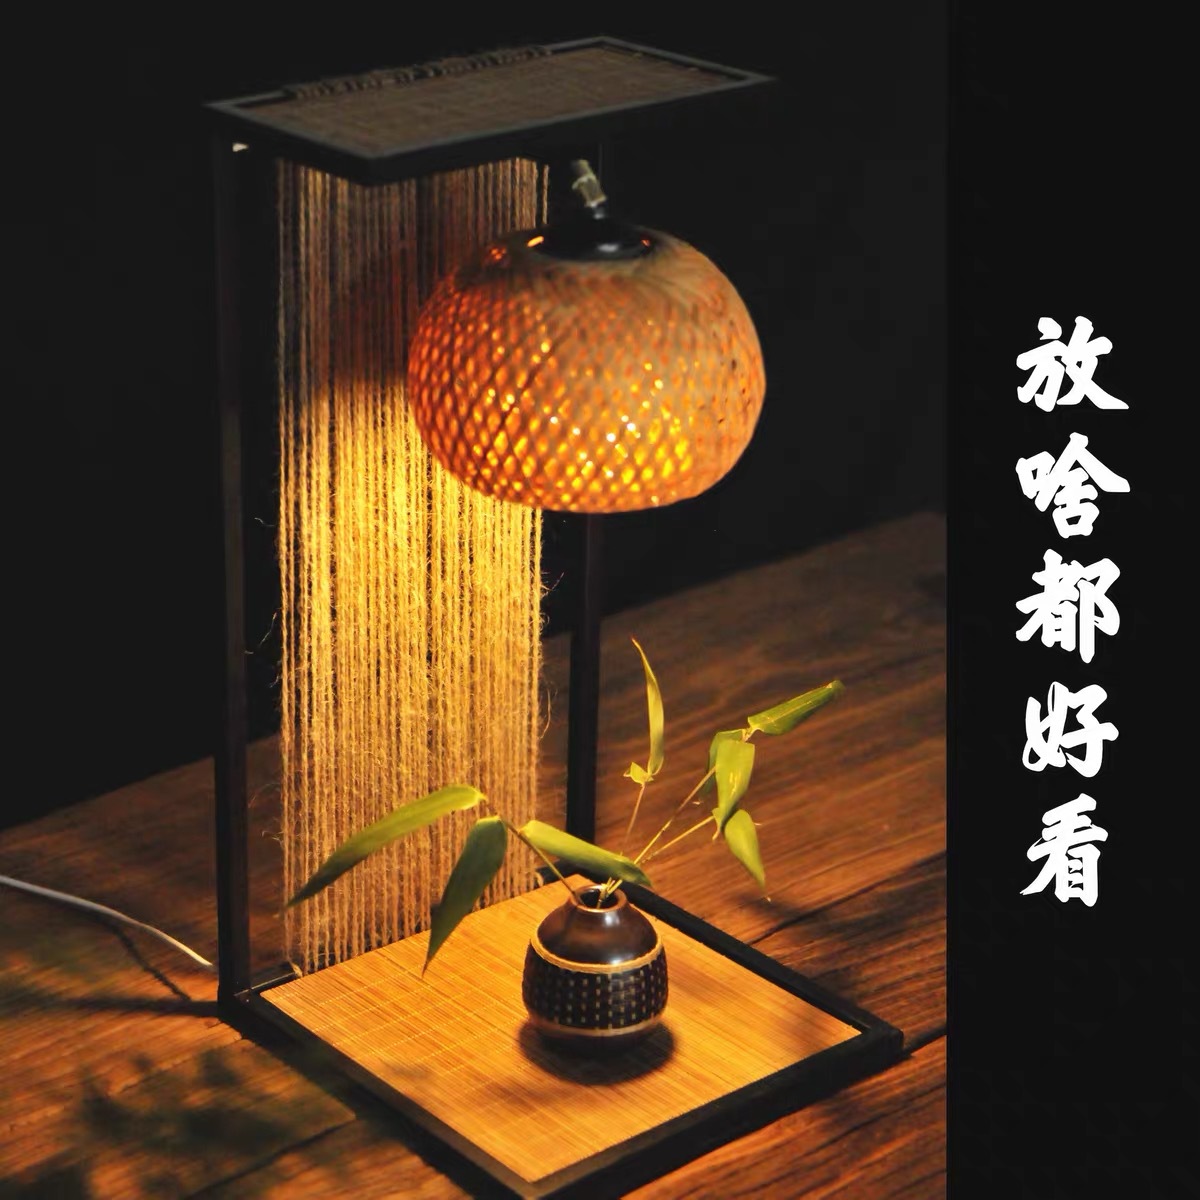 中式纯手工藤艺竹编复古台灯日式创意禅意茶台床头氛围灯小夜灯晖